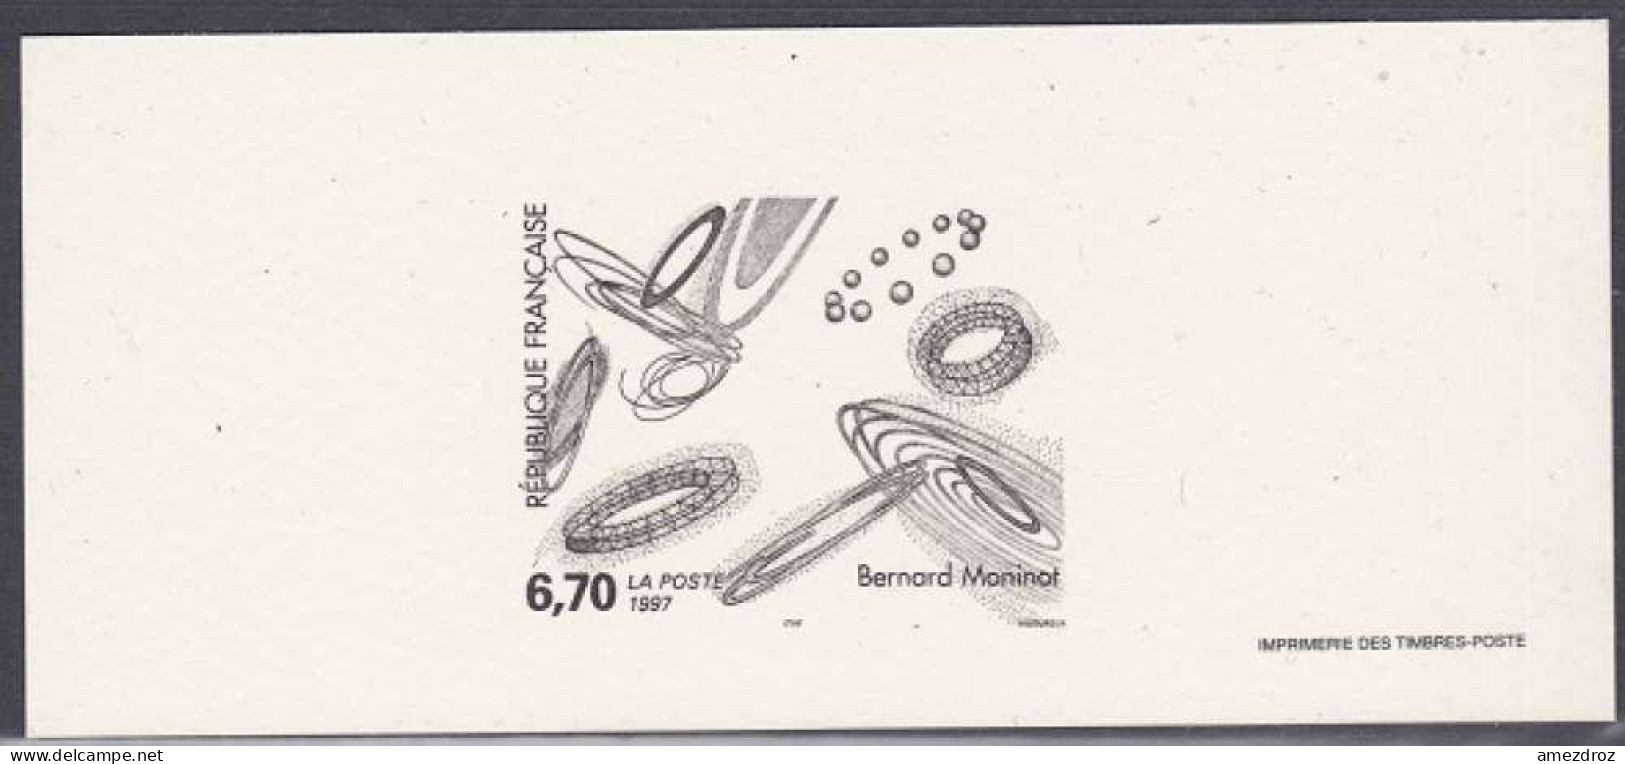 France Gravure Officielle - Tableau De Bernard Monimot (4) - Documents Of Postal Services